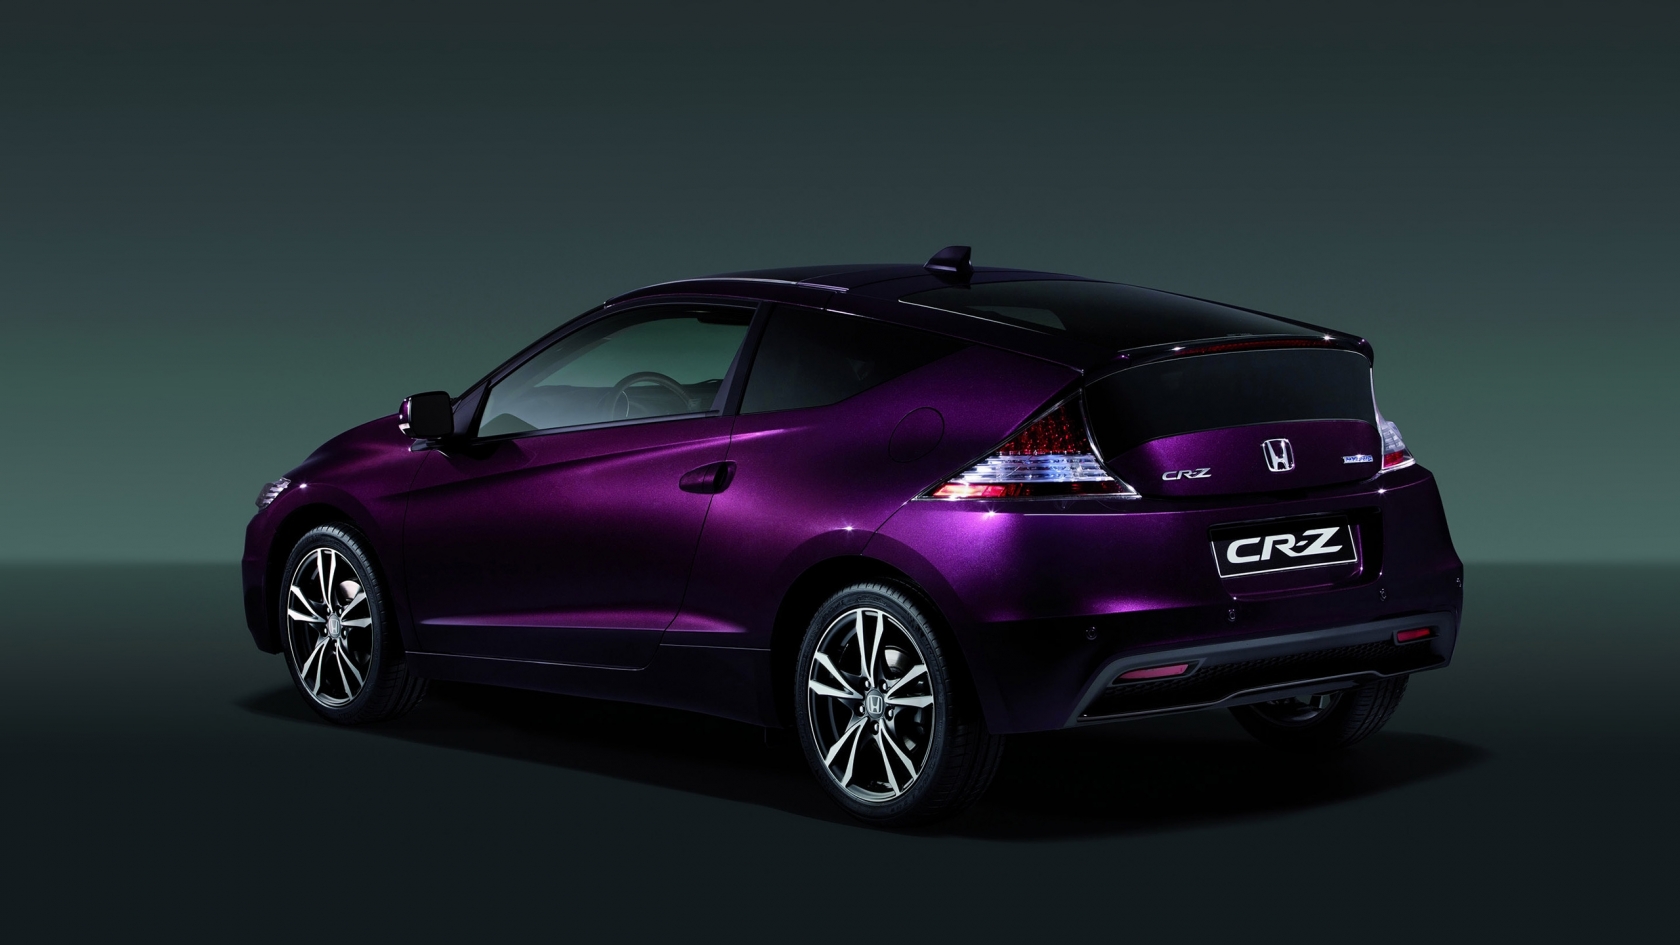 2013 Honda CR-Z Hybrid for 1680 x 945 HDTV resolution